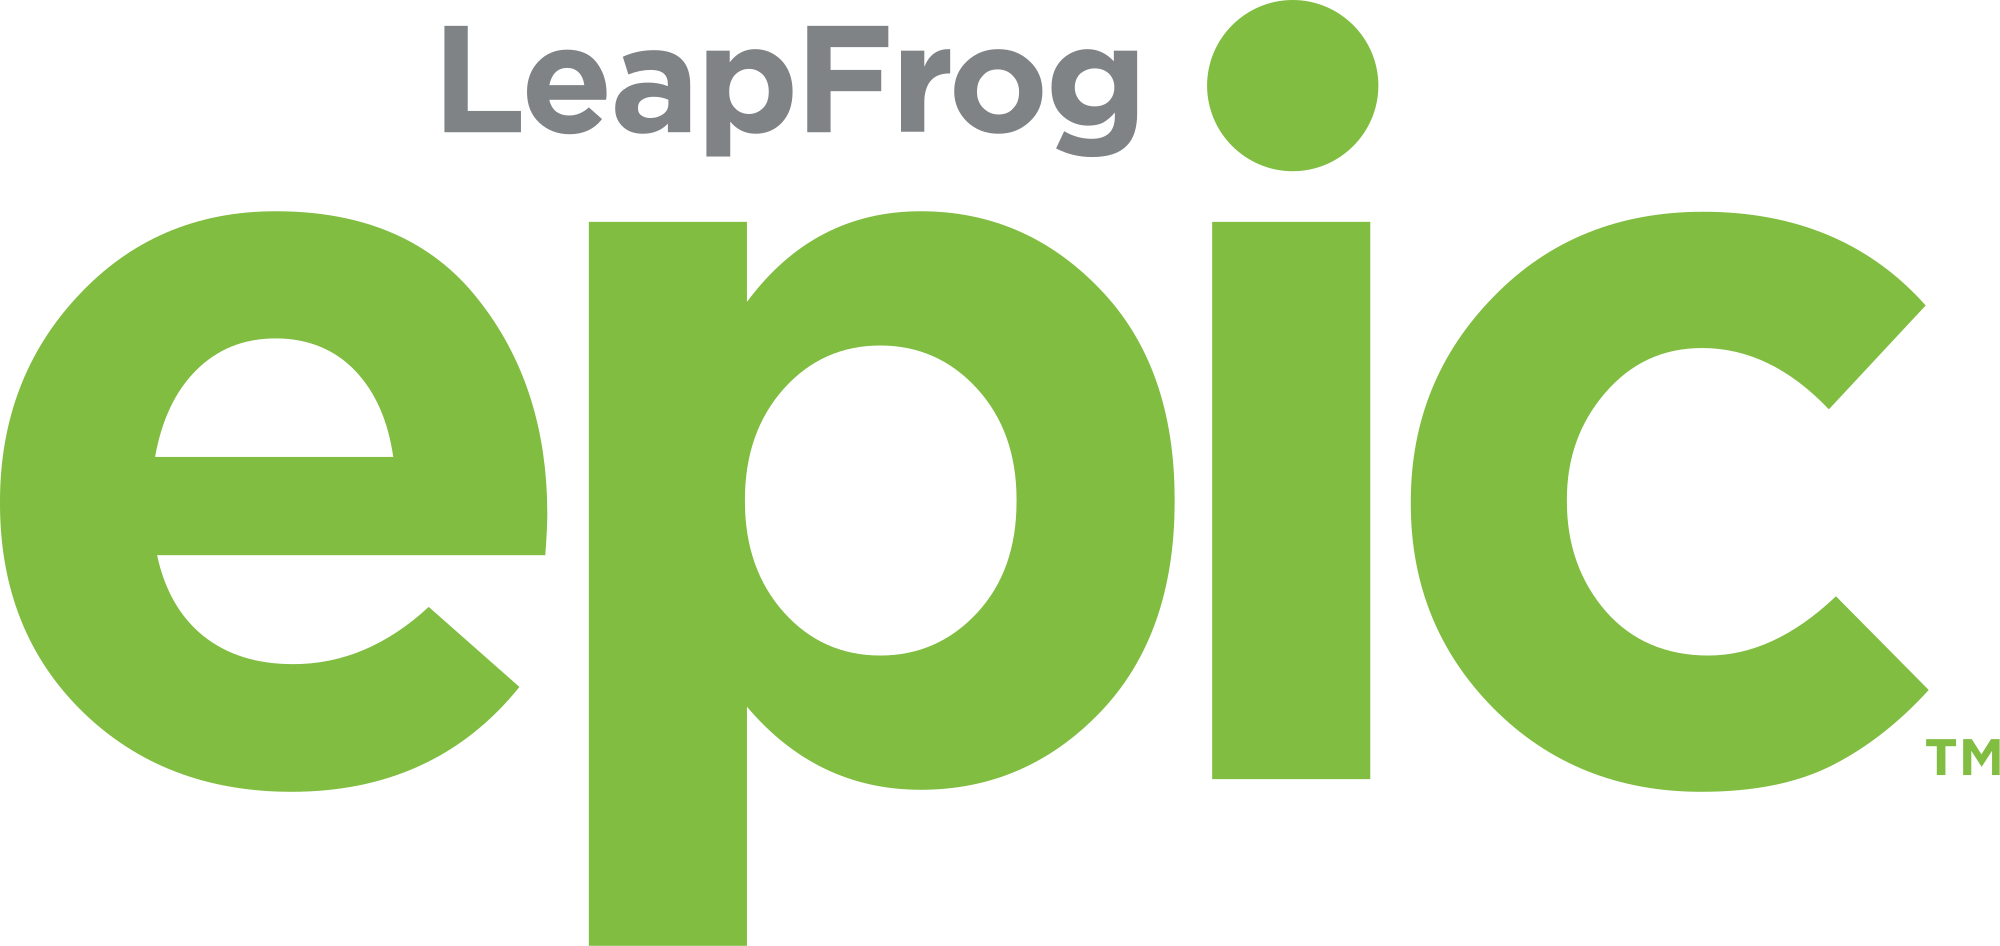 LeapFrog Logo - File:LeapFrog Epic logo.svg - Wikimedia Commons